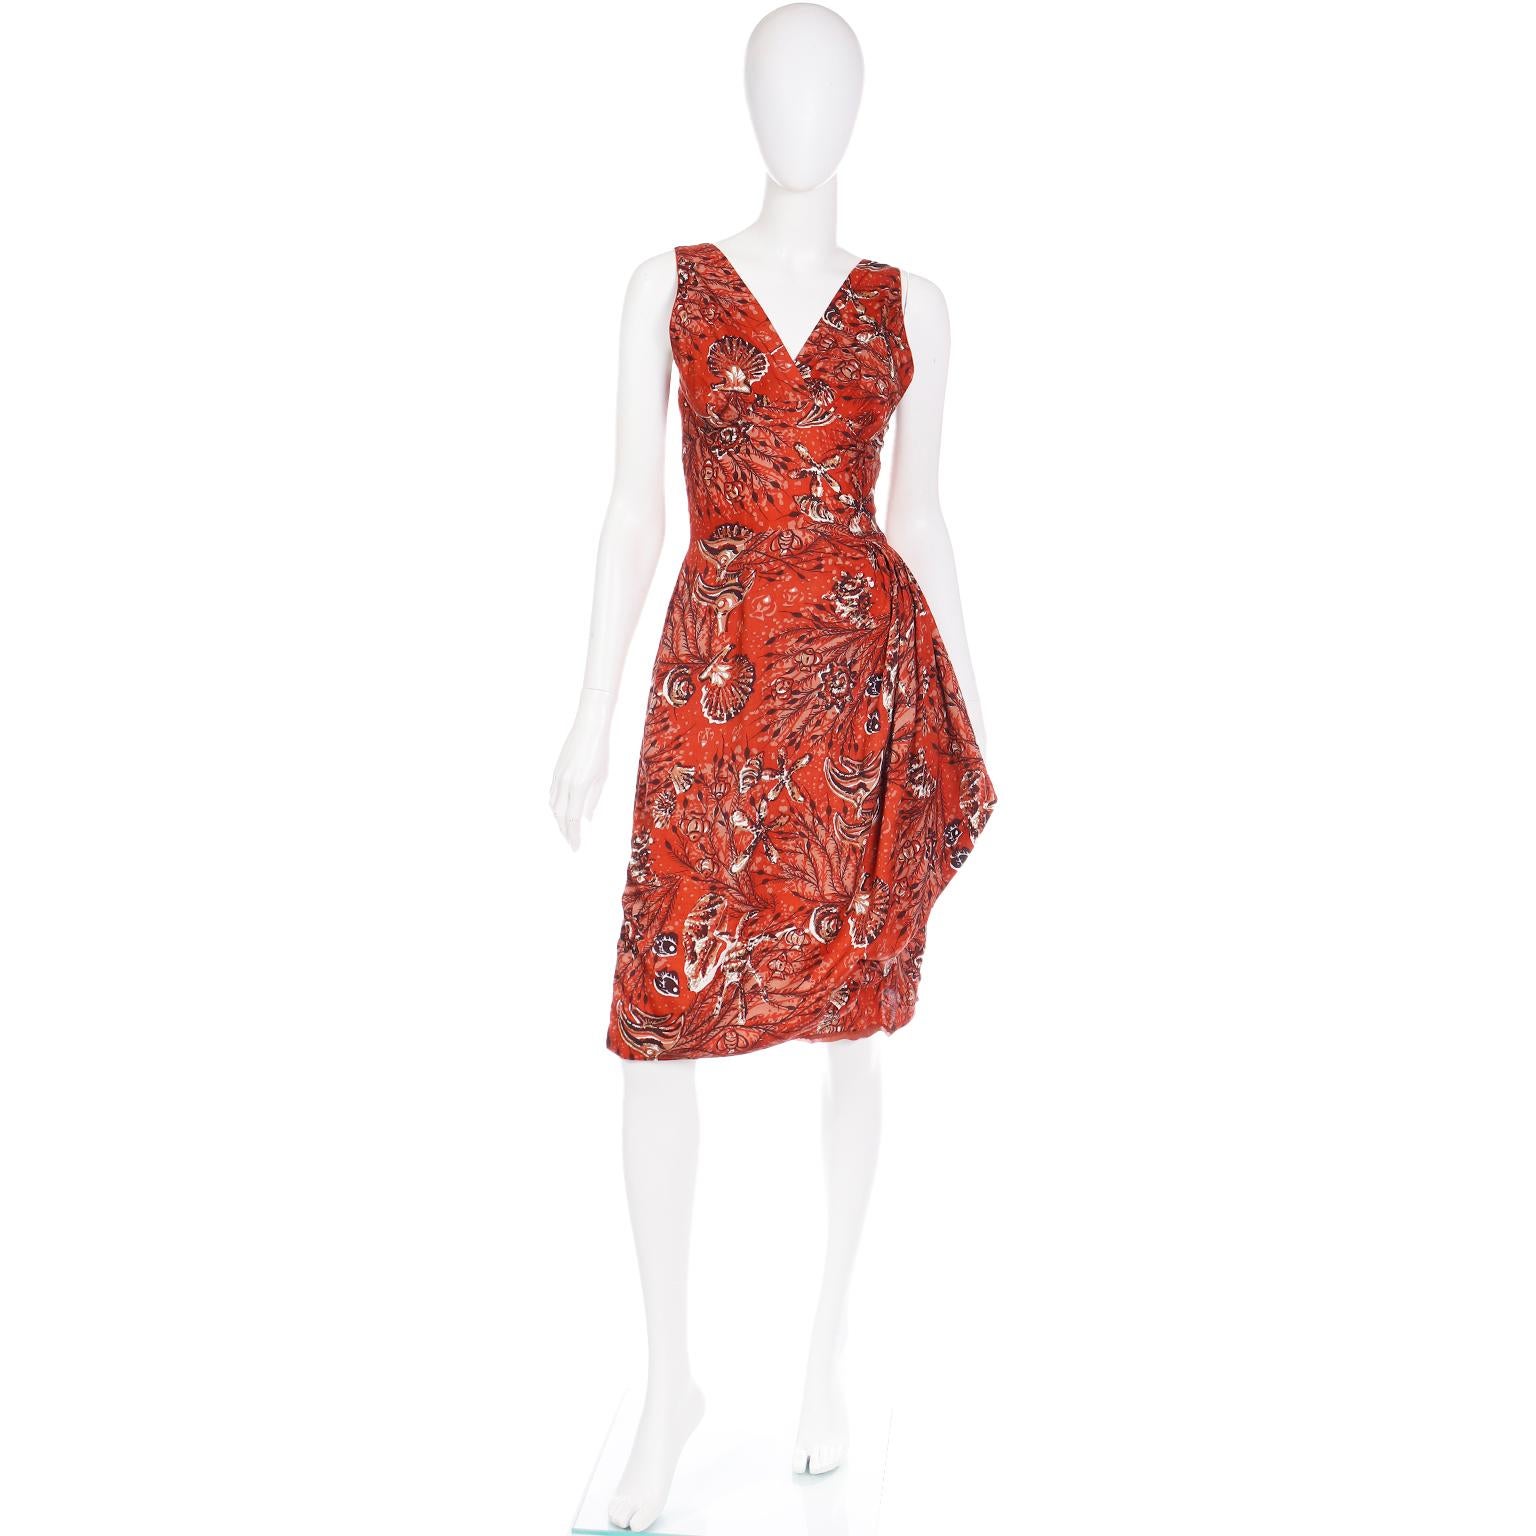 Dieser Spaß Vintage 1950's Sarong Stil Baumwollkleid ist in einem Spaß rostig Kupfer tropischen Ozean drucken.  Das Kleid hat einen tiefen V-Ausschnitt und schöne Raffungen an der Seite, die einen asymmetrischen Faltenwurf erzeugen. Es gibt einen 5